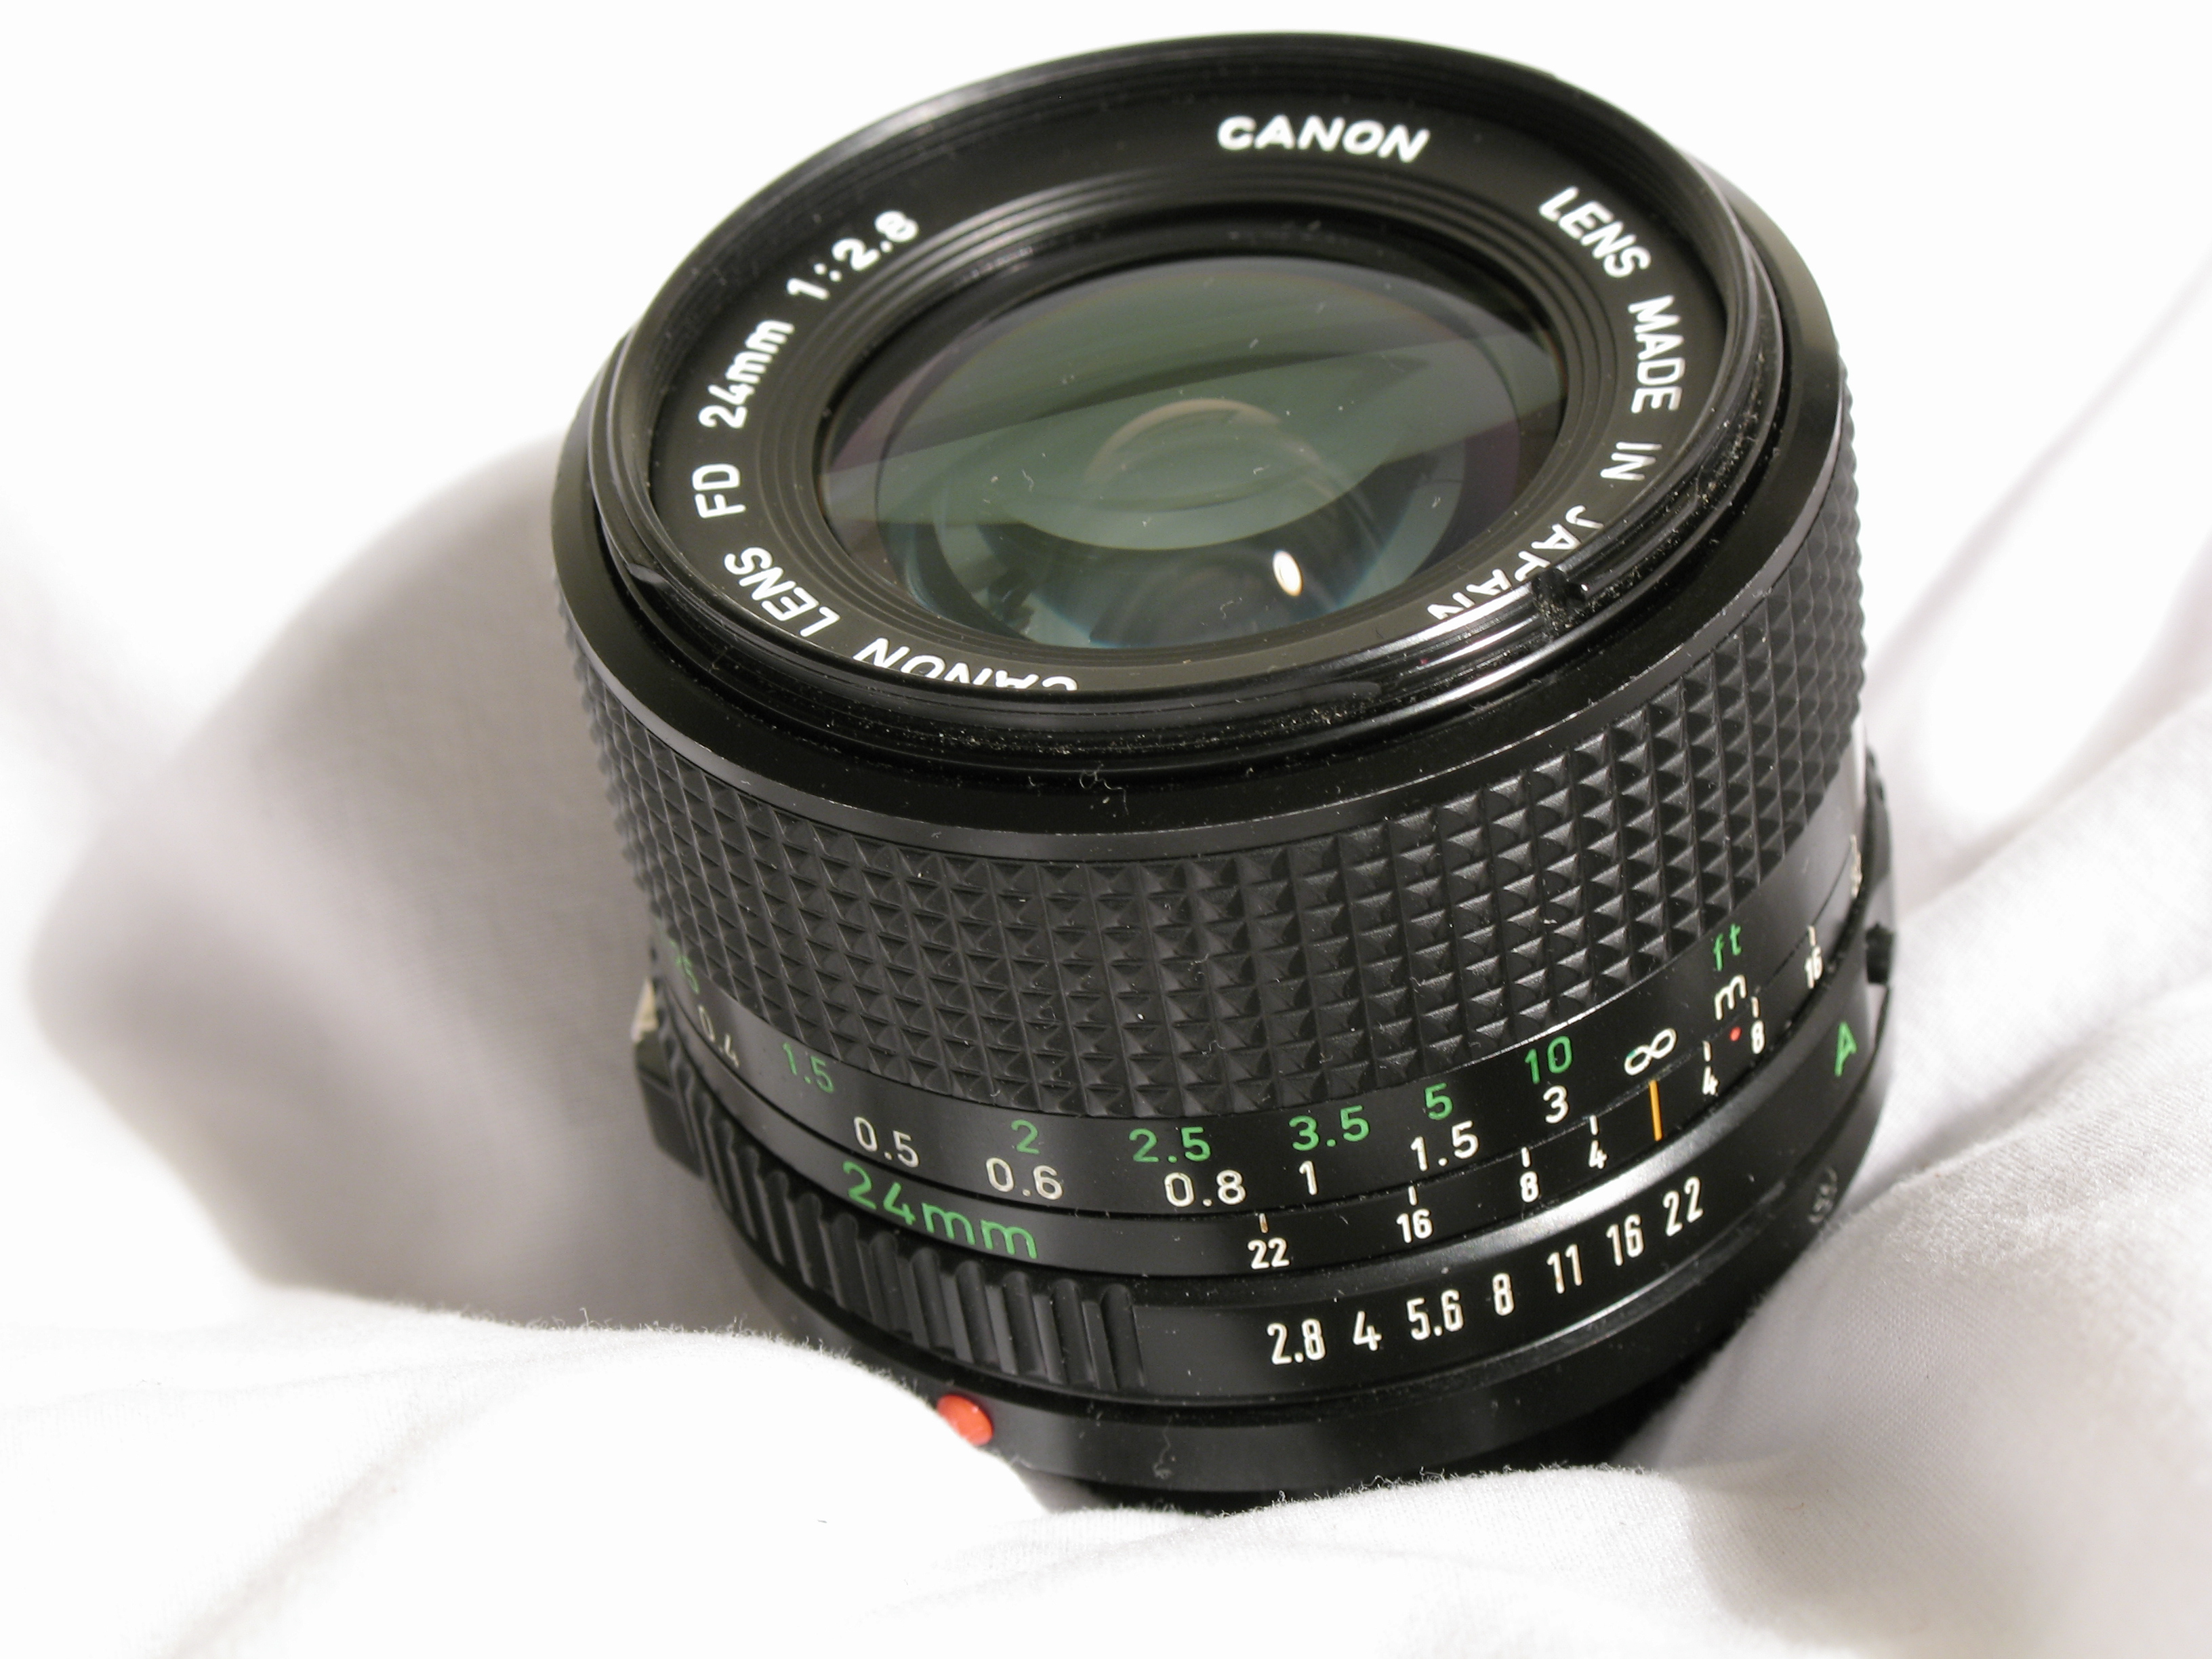 Canon MFレンズ NewFD 24mm F2.8